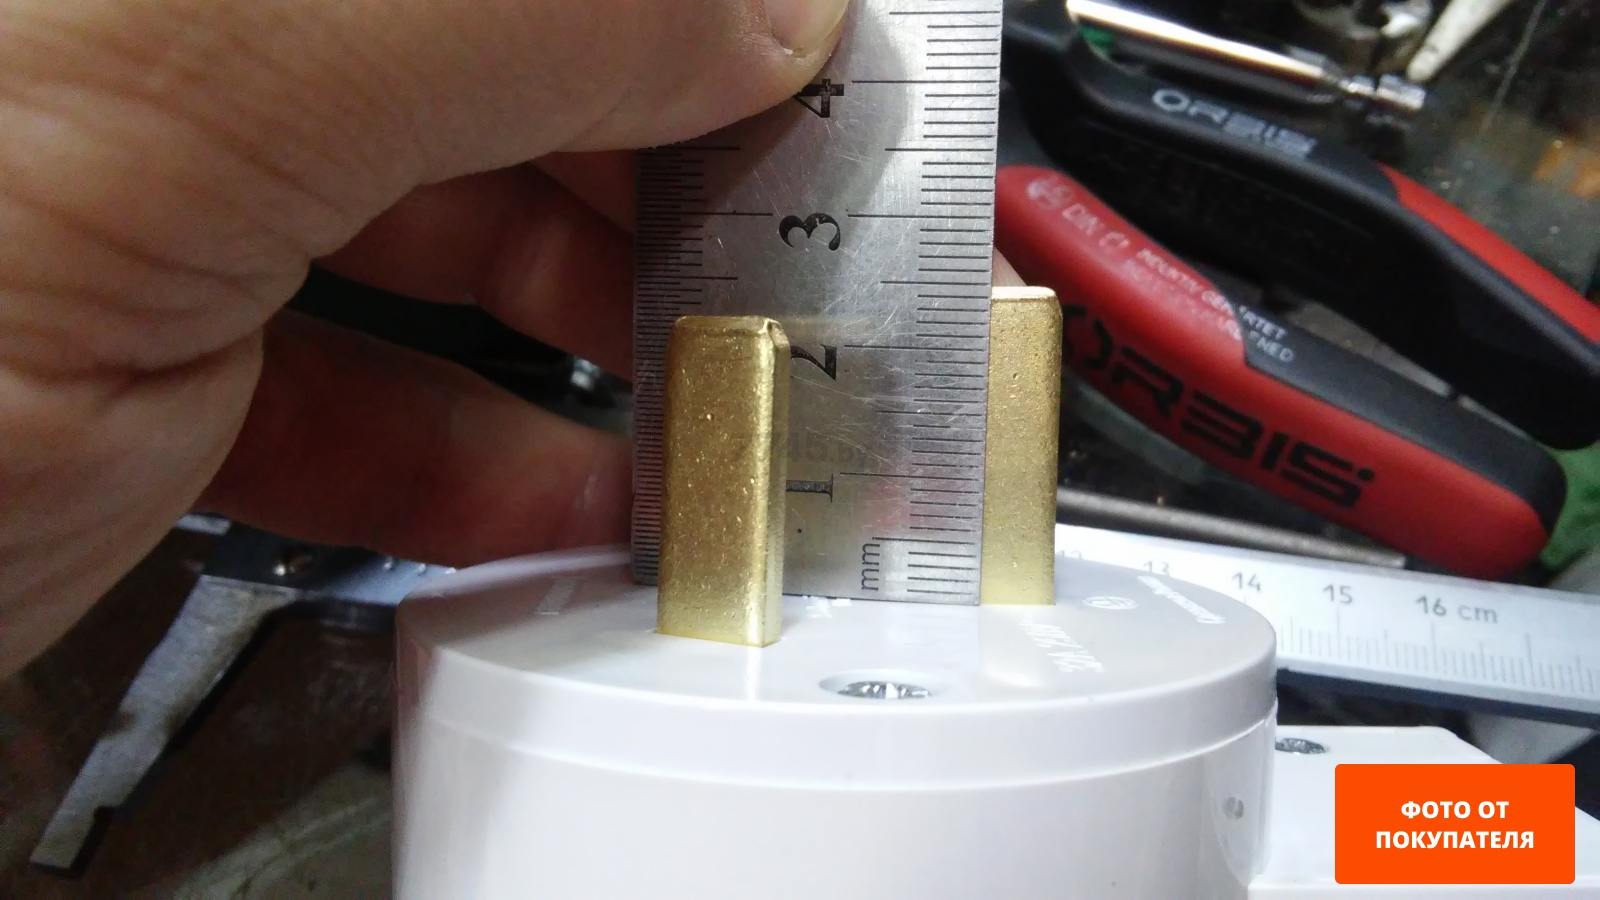 Вилка с розеткой и подрозетником для электроплиты скрытая 32 А 250 В SCHNEIDER ELECTRIC (BLNSK013231) - Фото 3